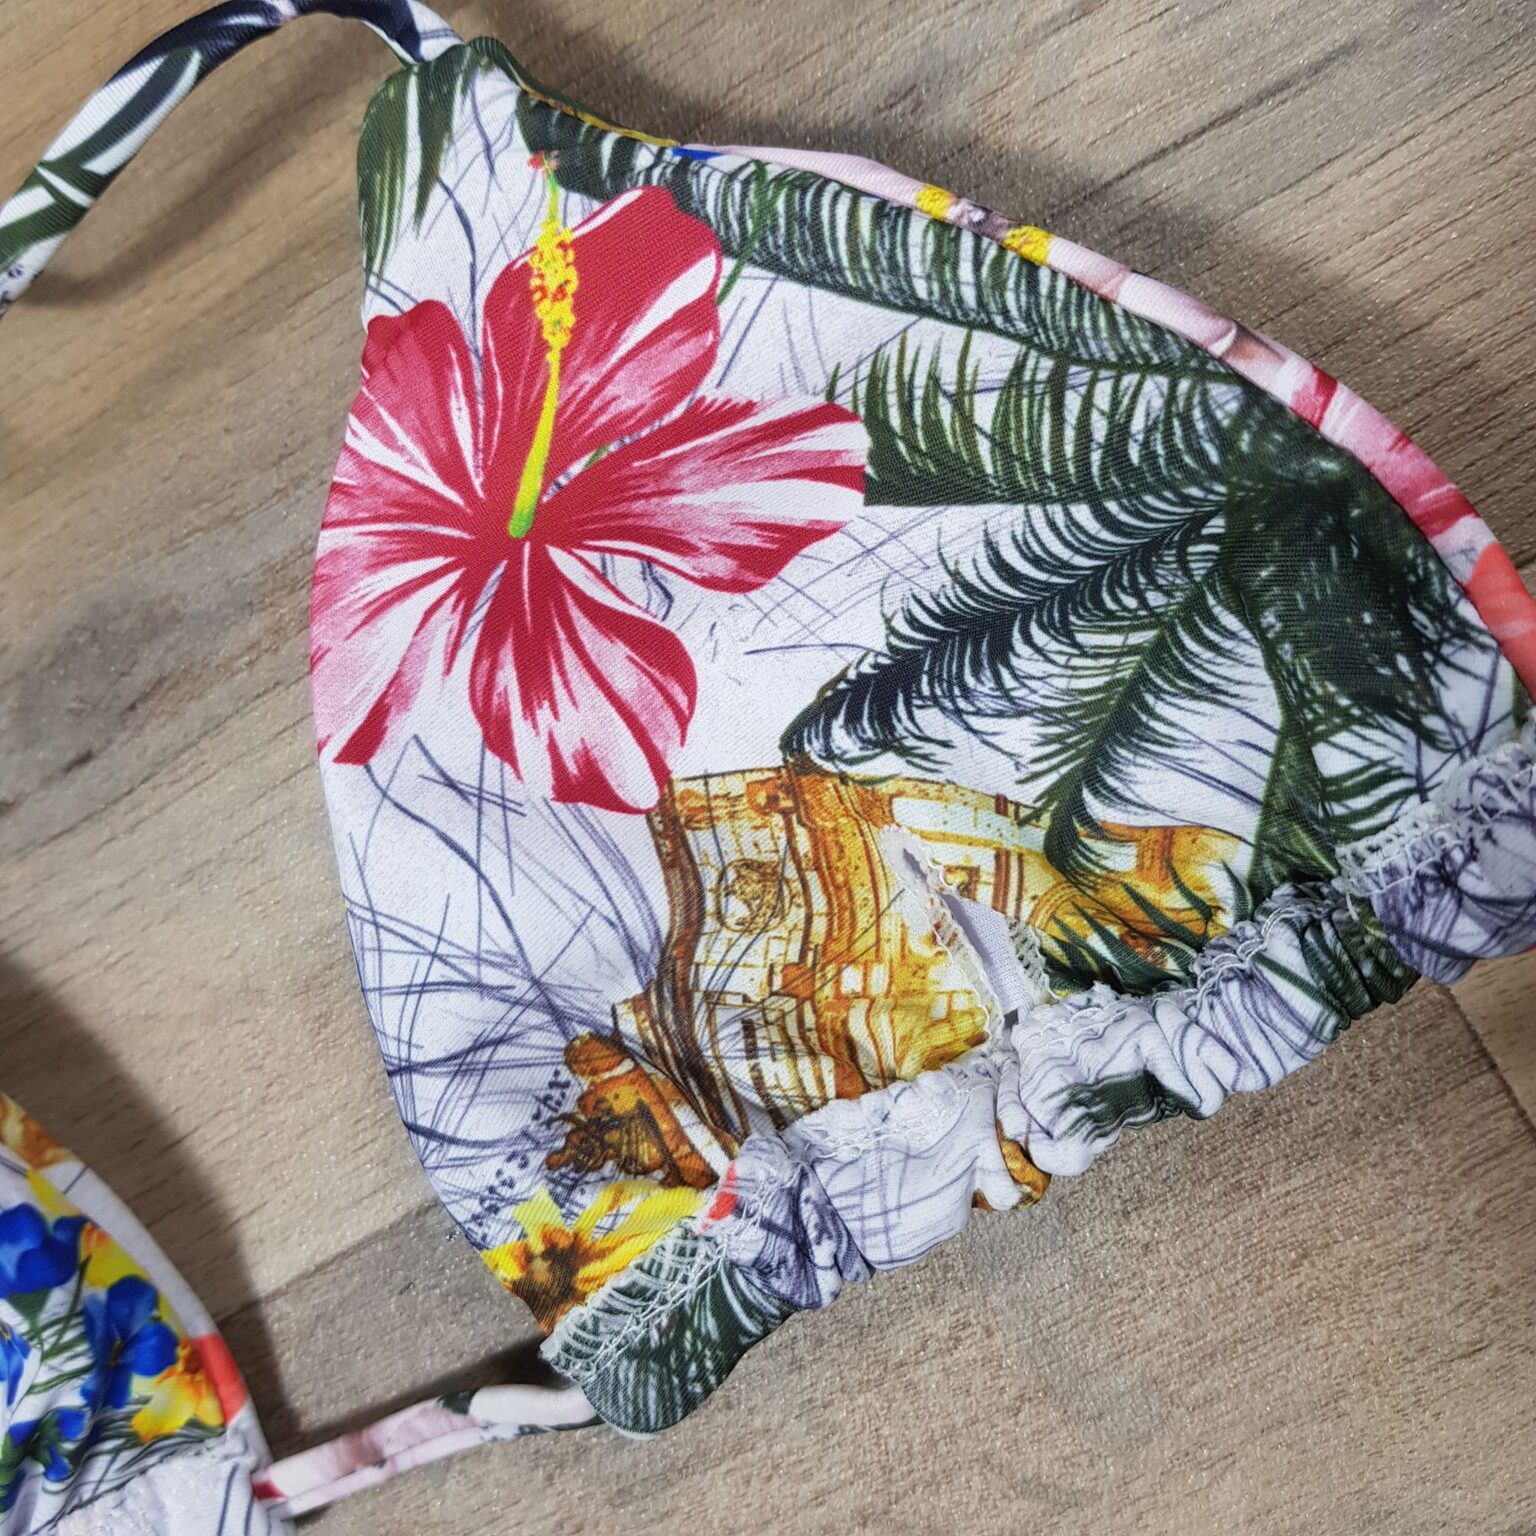 Costum de baie cu slip brazilian si imprimeu floral Marymar